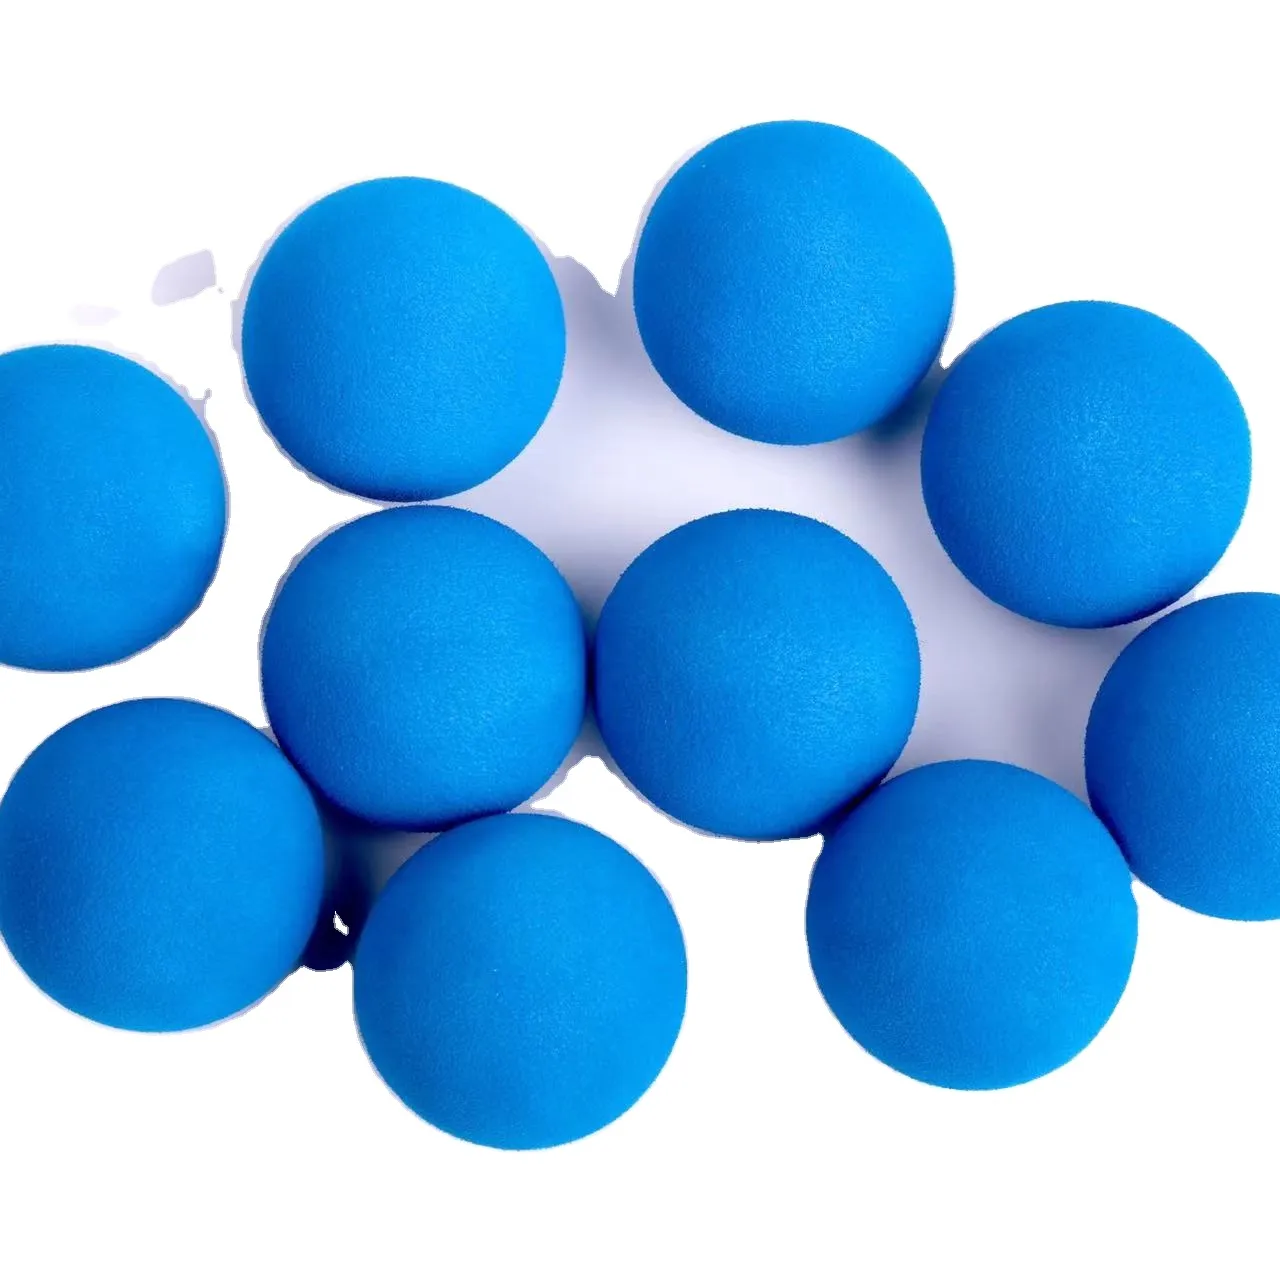 Игрушечные мячи для игры в гольф, 40 мм